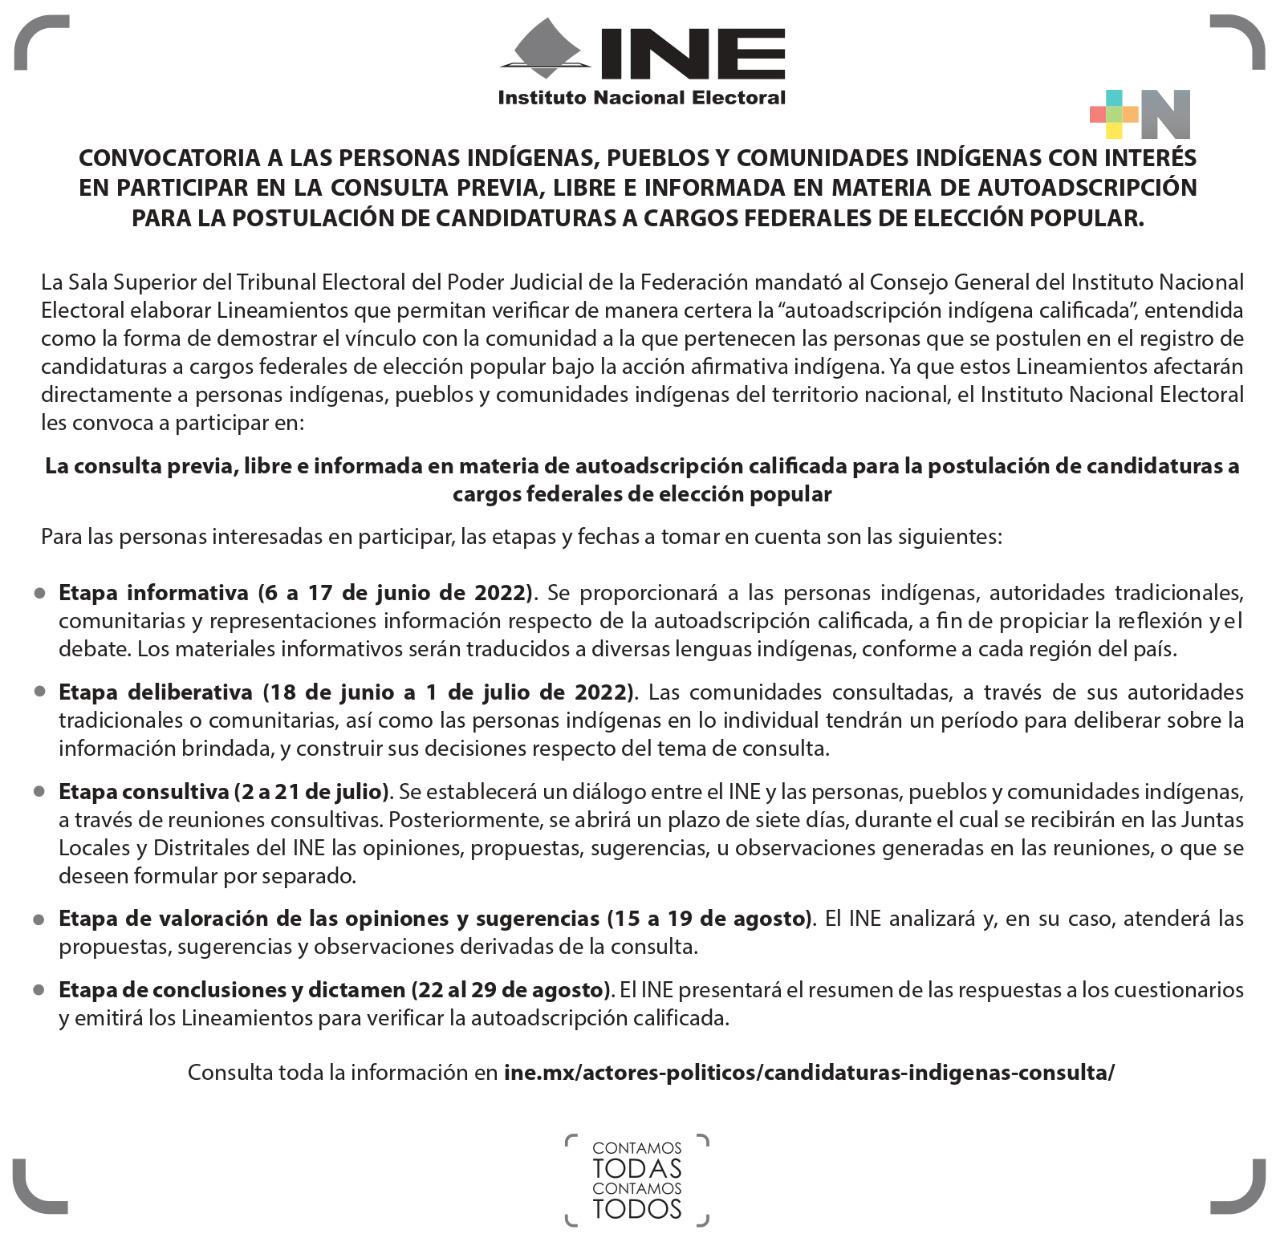 Participación de personas indígenas de Veracruz, prioritaria en consulta del INE en materia de autoadscripción